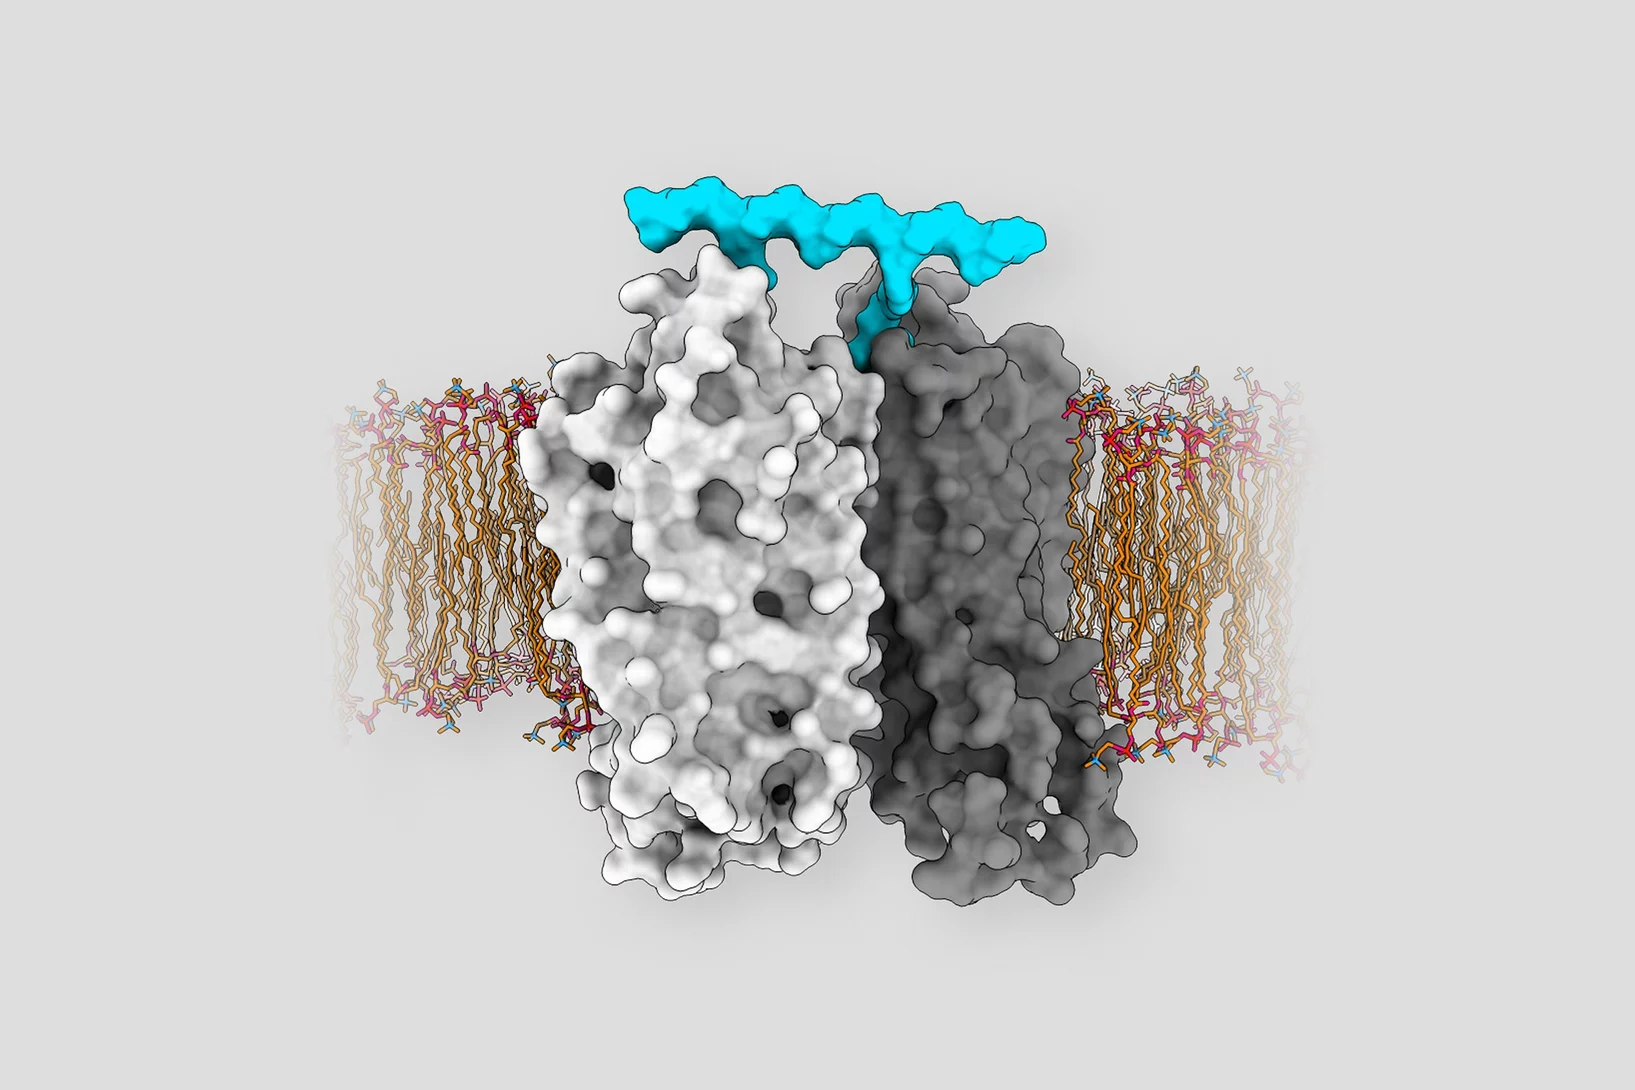 Ligand induced dimerization of GPCR